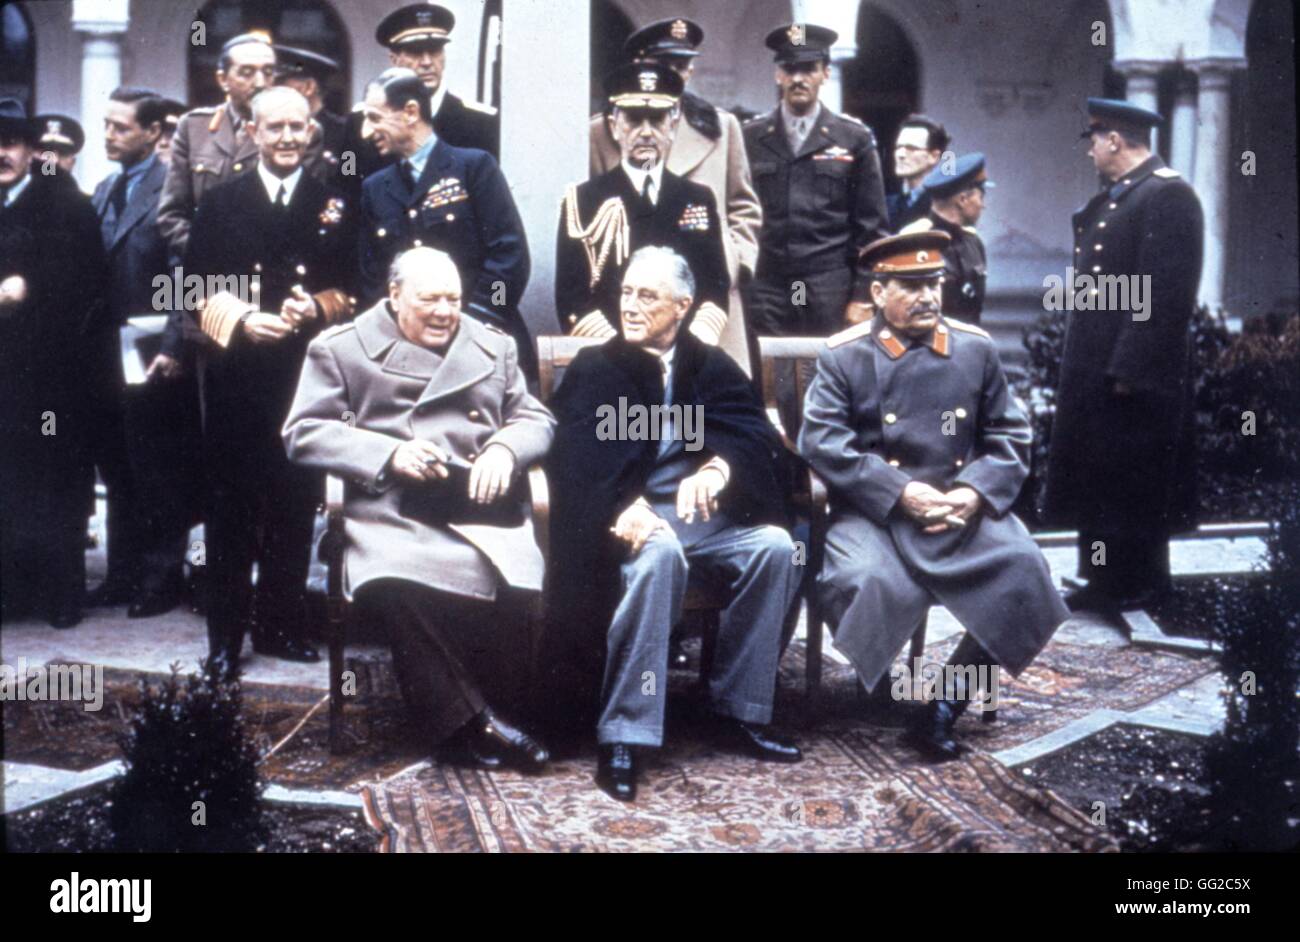 Conferenza di Yalta (Crimea). Churchill, Roosevelt e Stalin, in primo piano. Admiral D. Leahy (dietro Roosevelt), Sir A. Cunningham (dietro il Churchill). Sulla sinistra, E. Estattinius e Molotov può essere visto. Febbraio 1945 U.R.S.S. - La II Guerra Mondiale U.S. Esercito Foto Stock